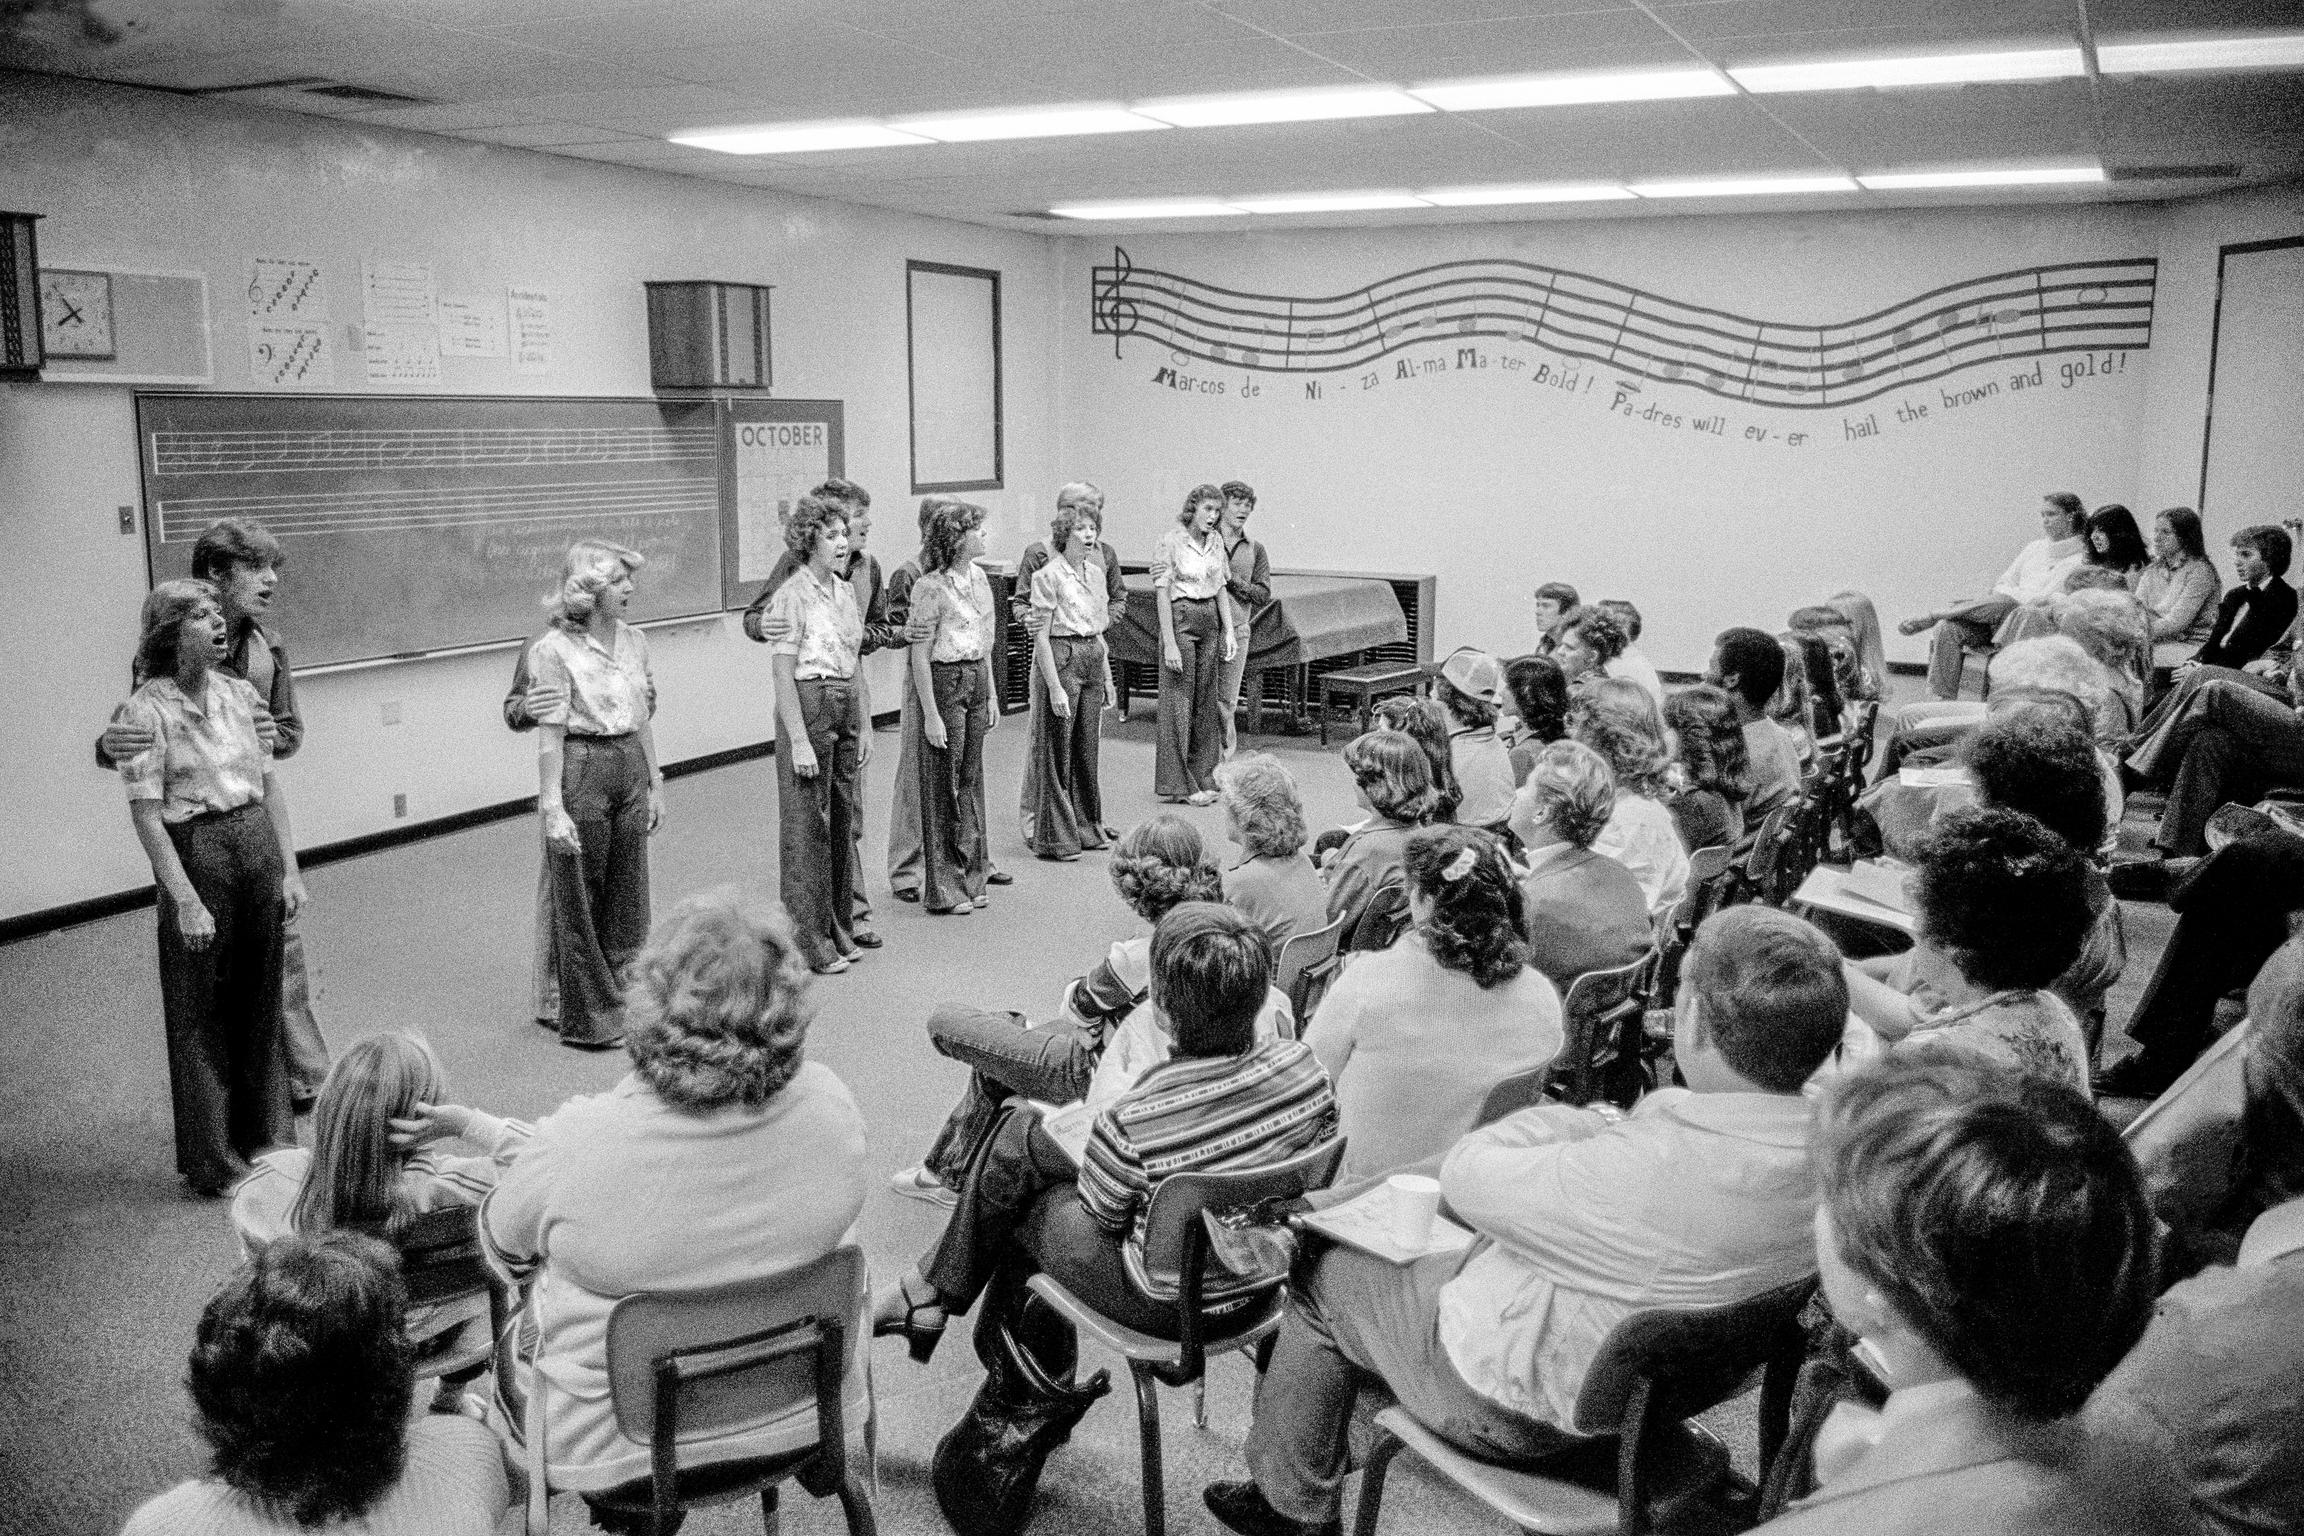 Parents open day at Marcos de Niza High School in Tempe. The school choir gives a recital. Tempe, Arizona USA